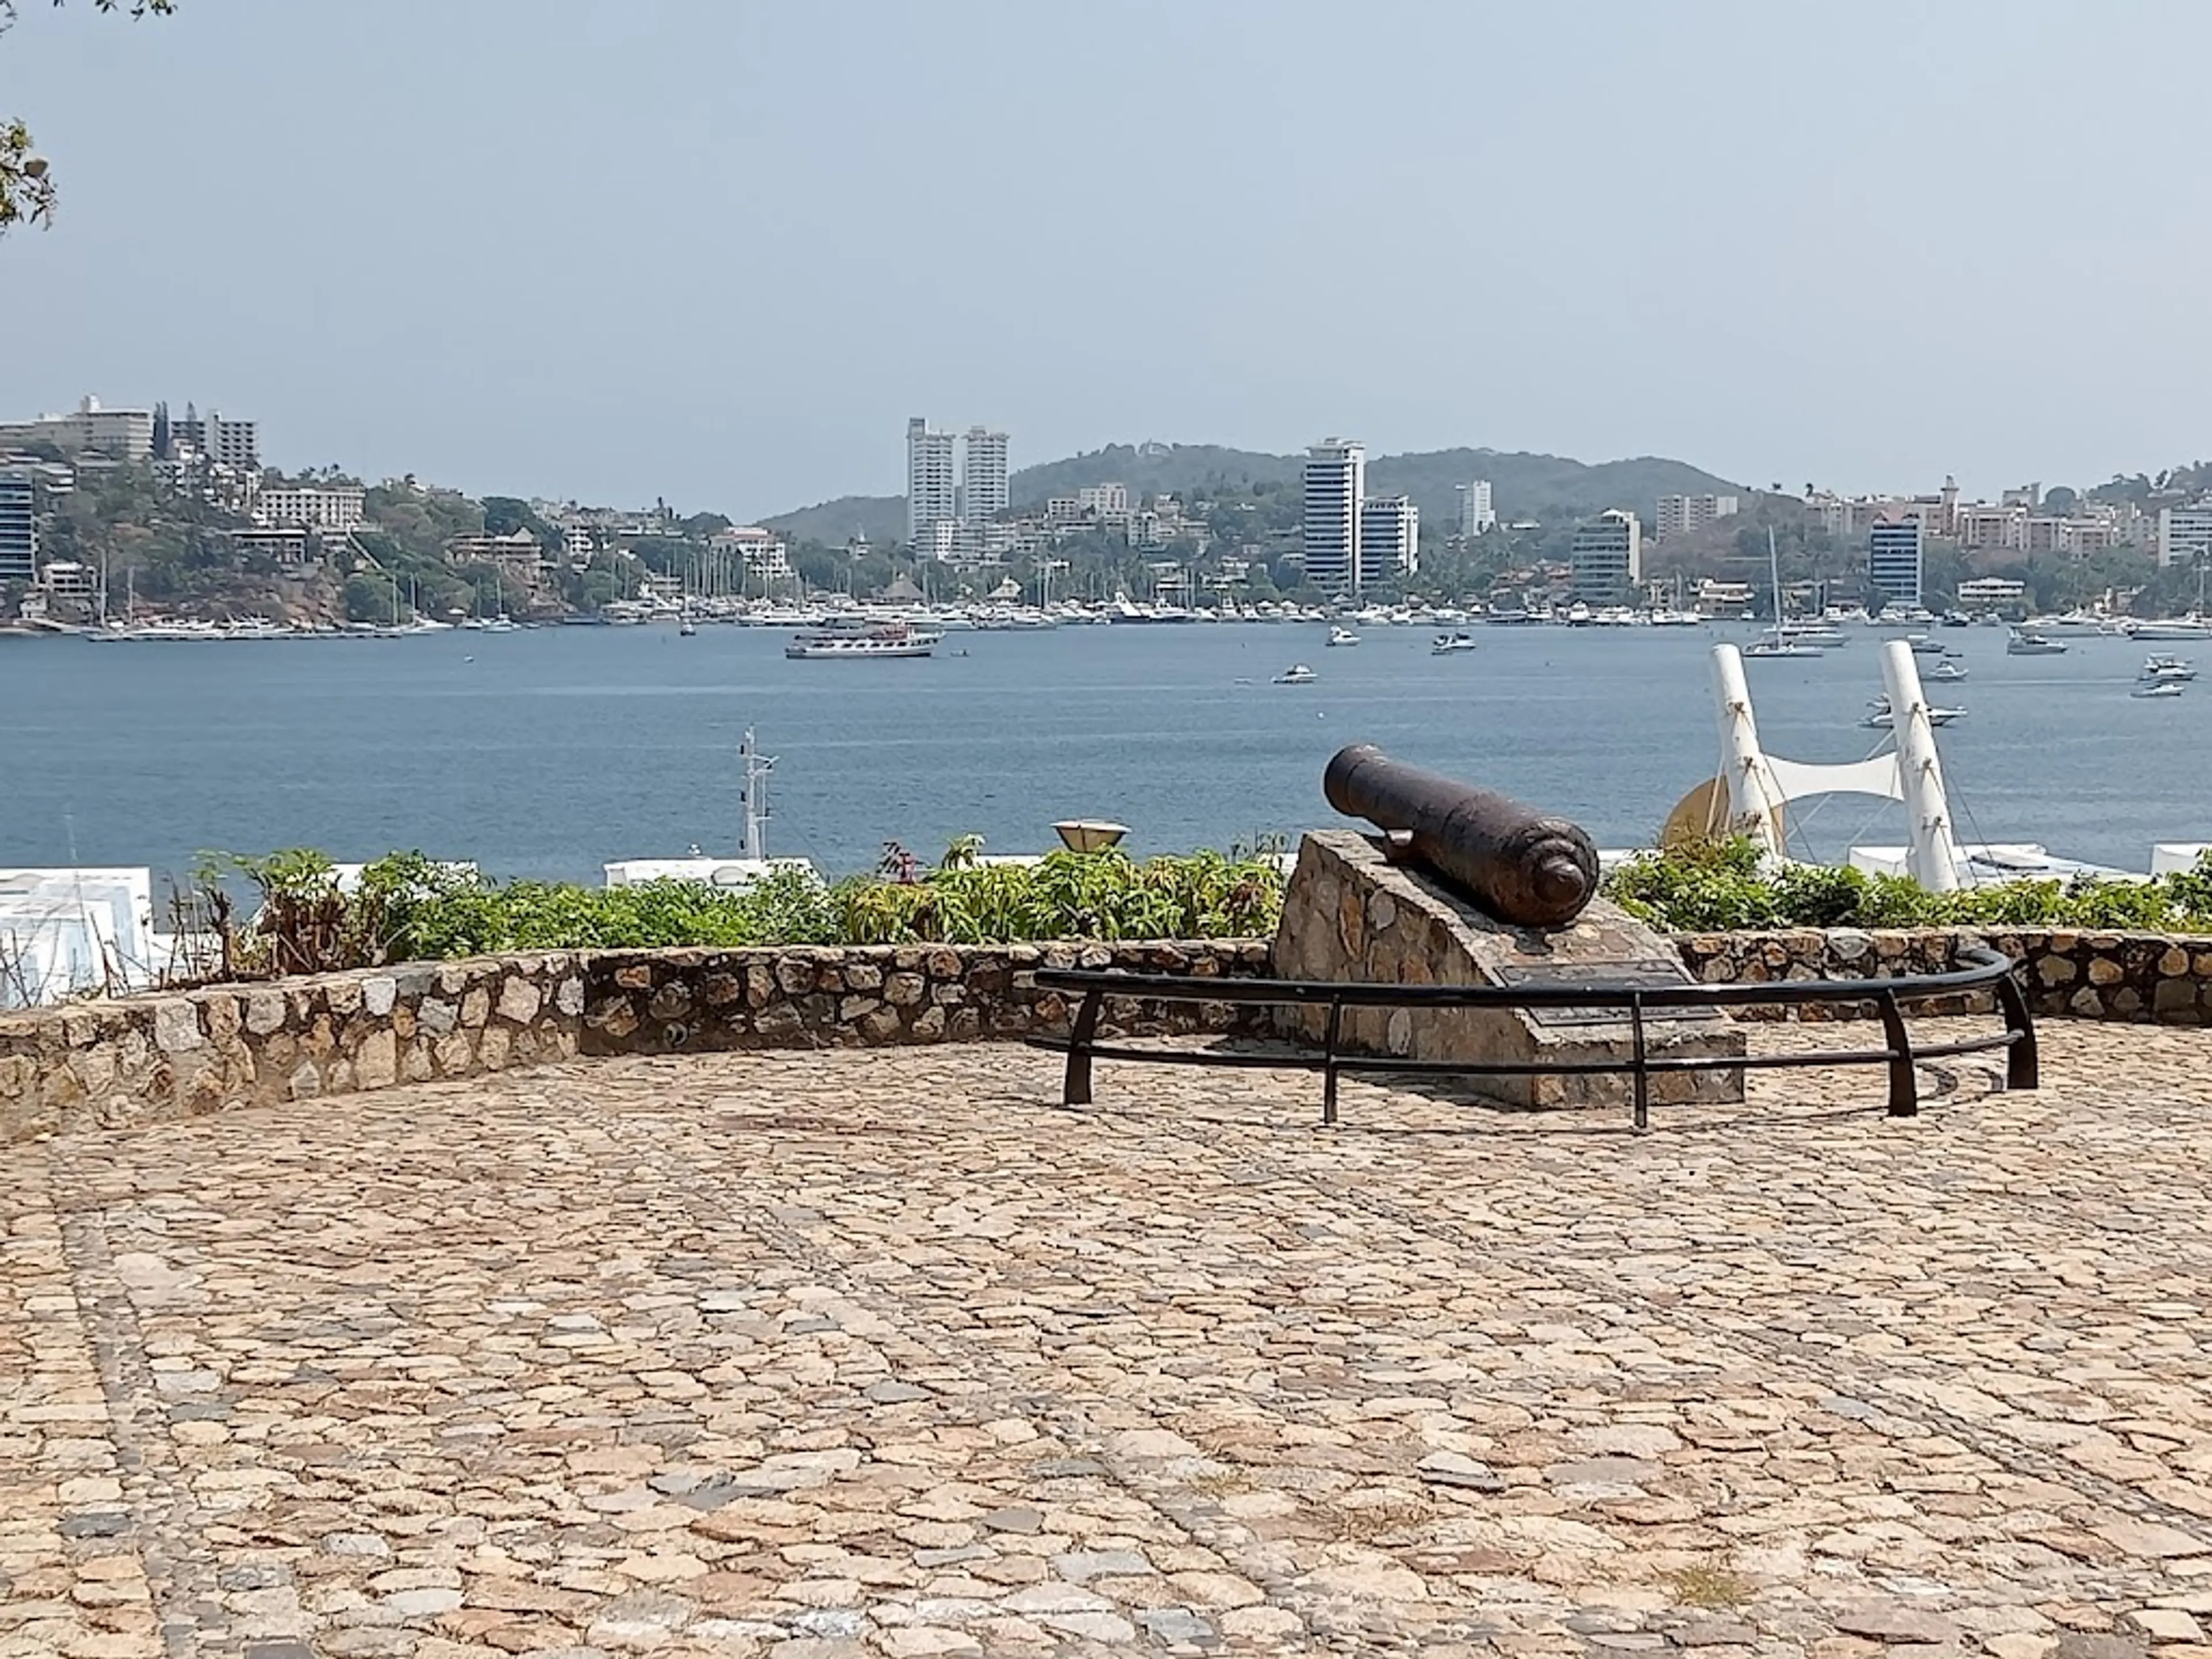 Acapulco Historical Museum